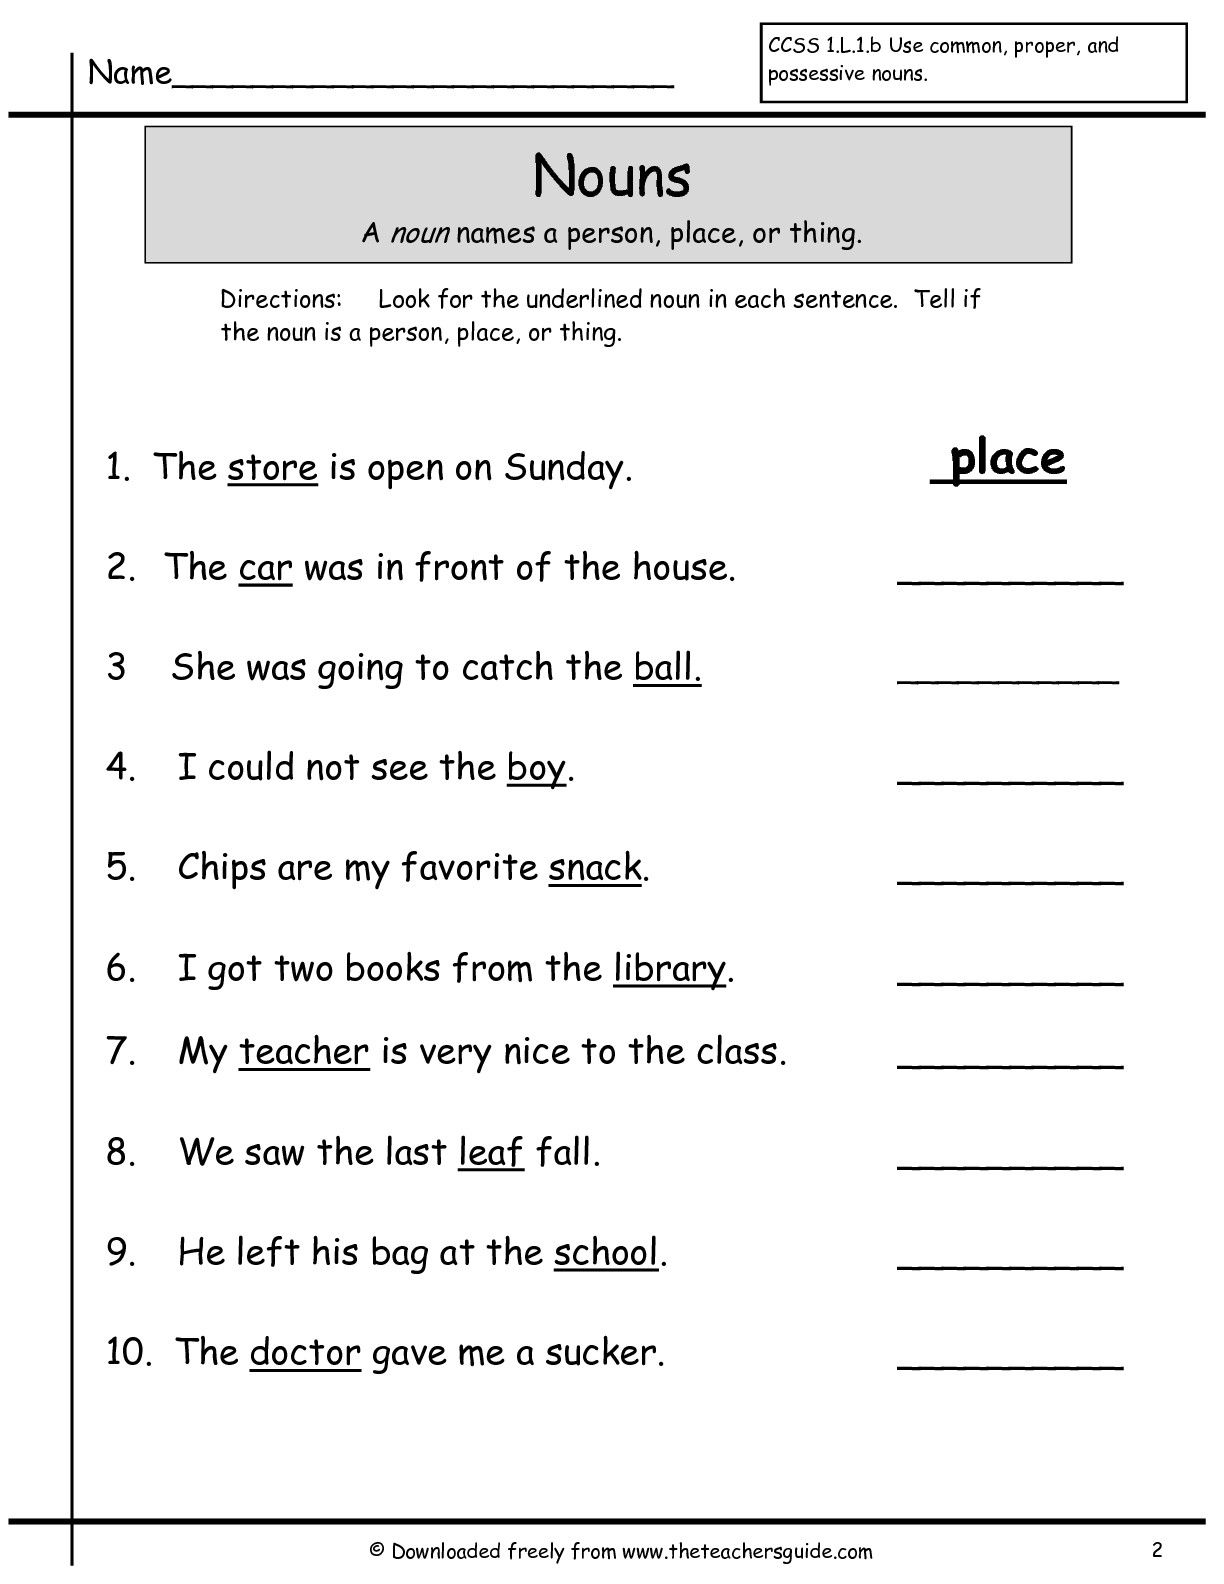 Nouns Worksheet For Grade 2